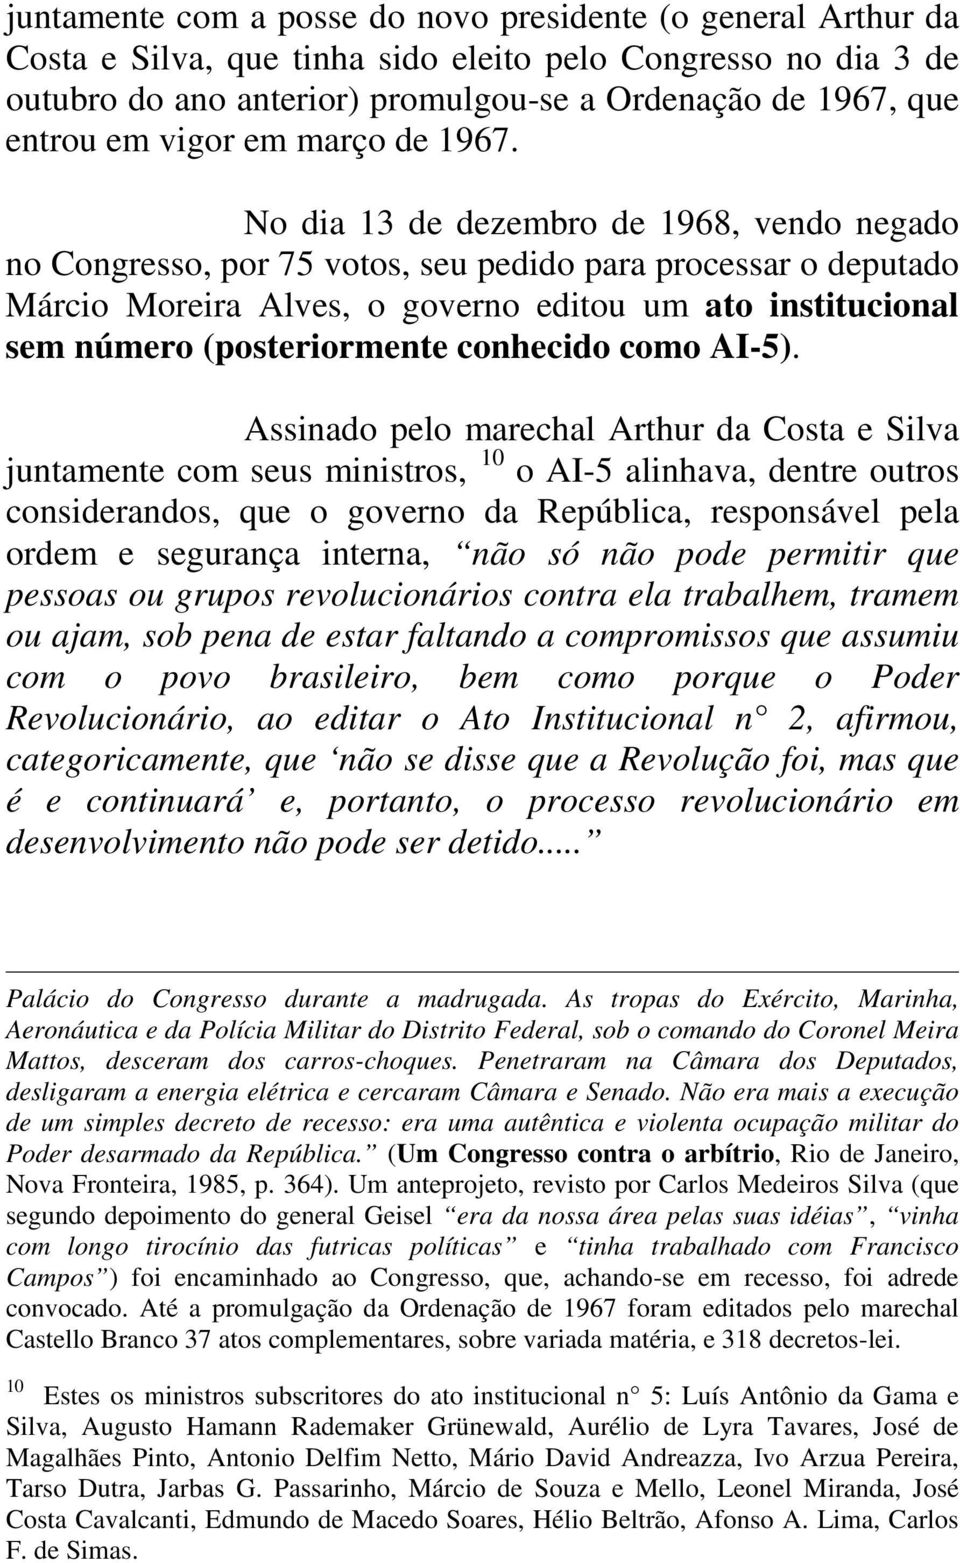 No dia 13 de dezembro de 1968, vendo negado no Congresso, por 75 votos, seu pedido para processar o deputado Márcio Moreira Alves, o governo editou um ato institucional sem número (posteriormente